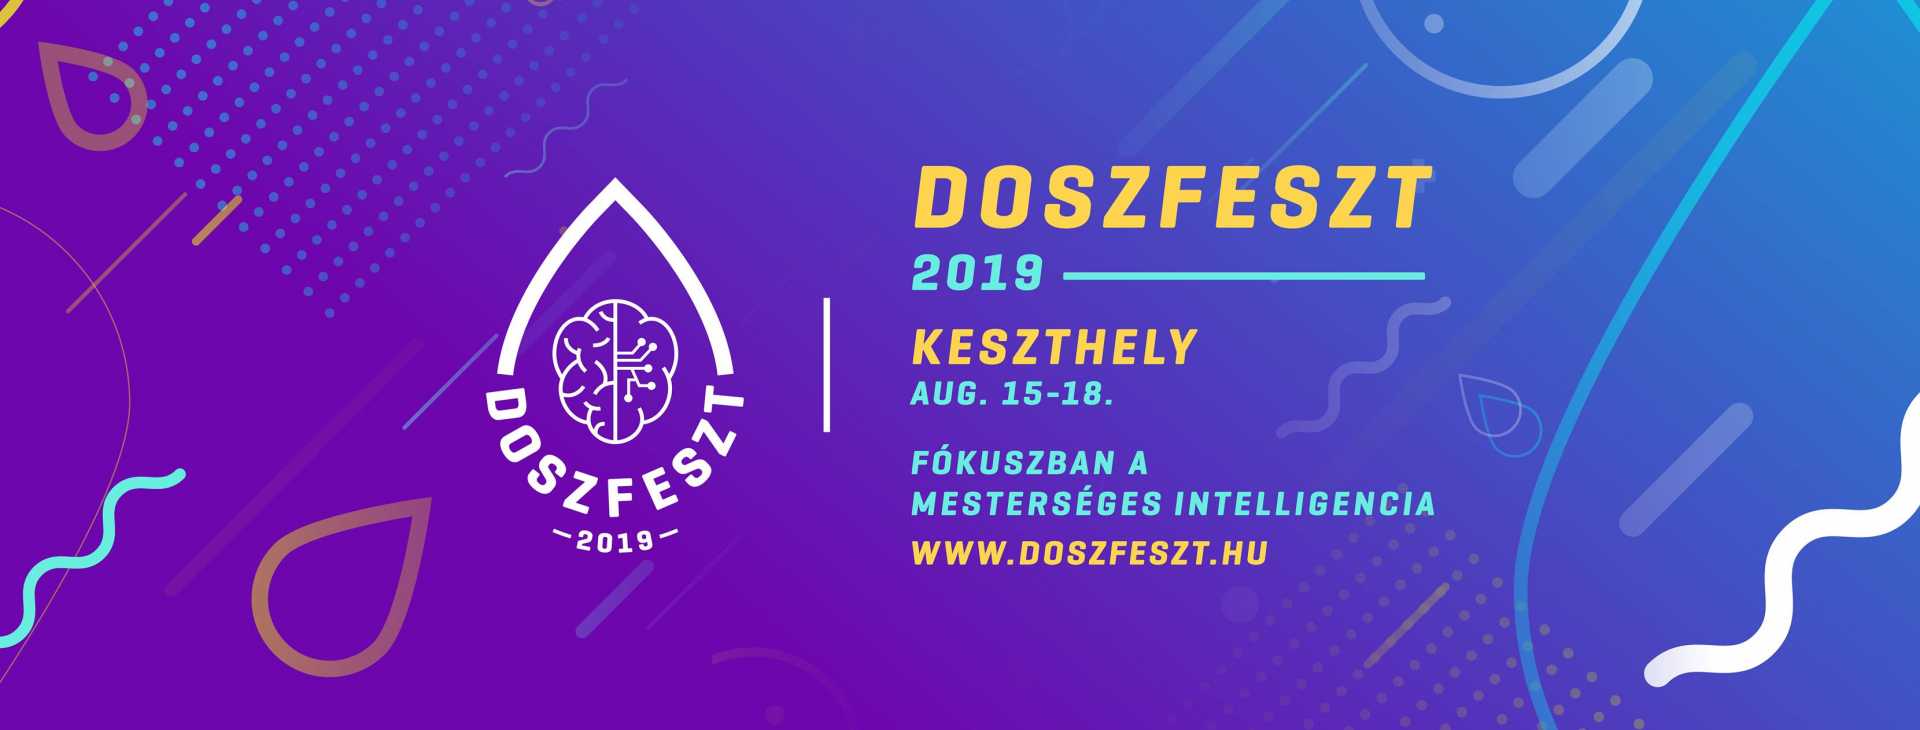 DoszFeszt 2019